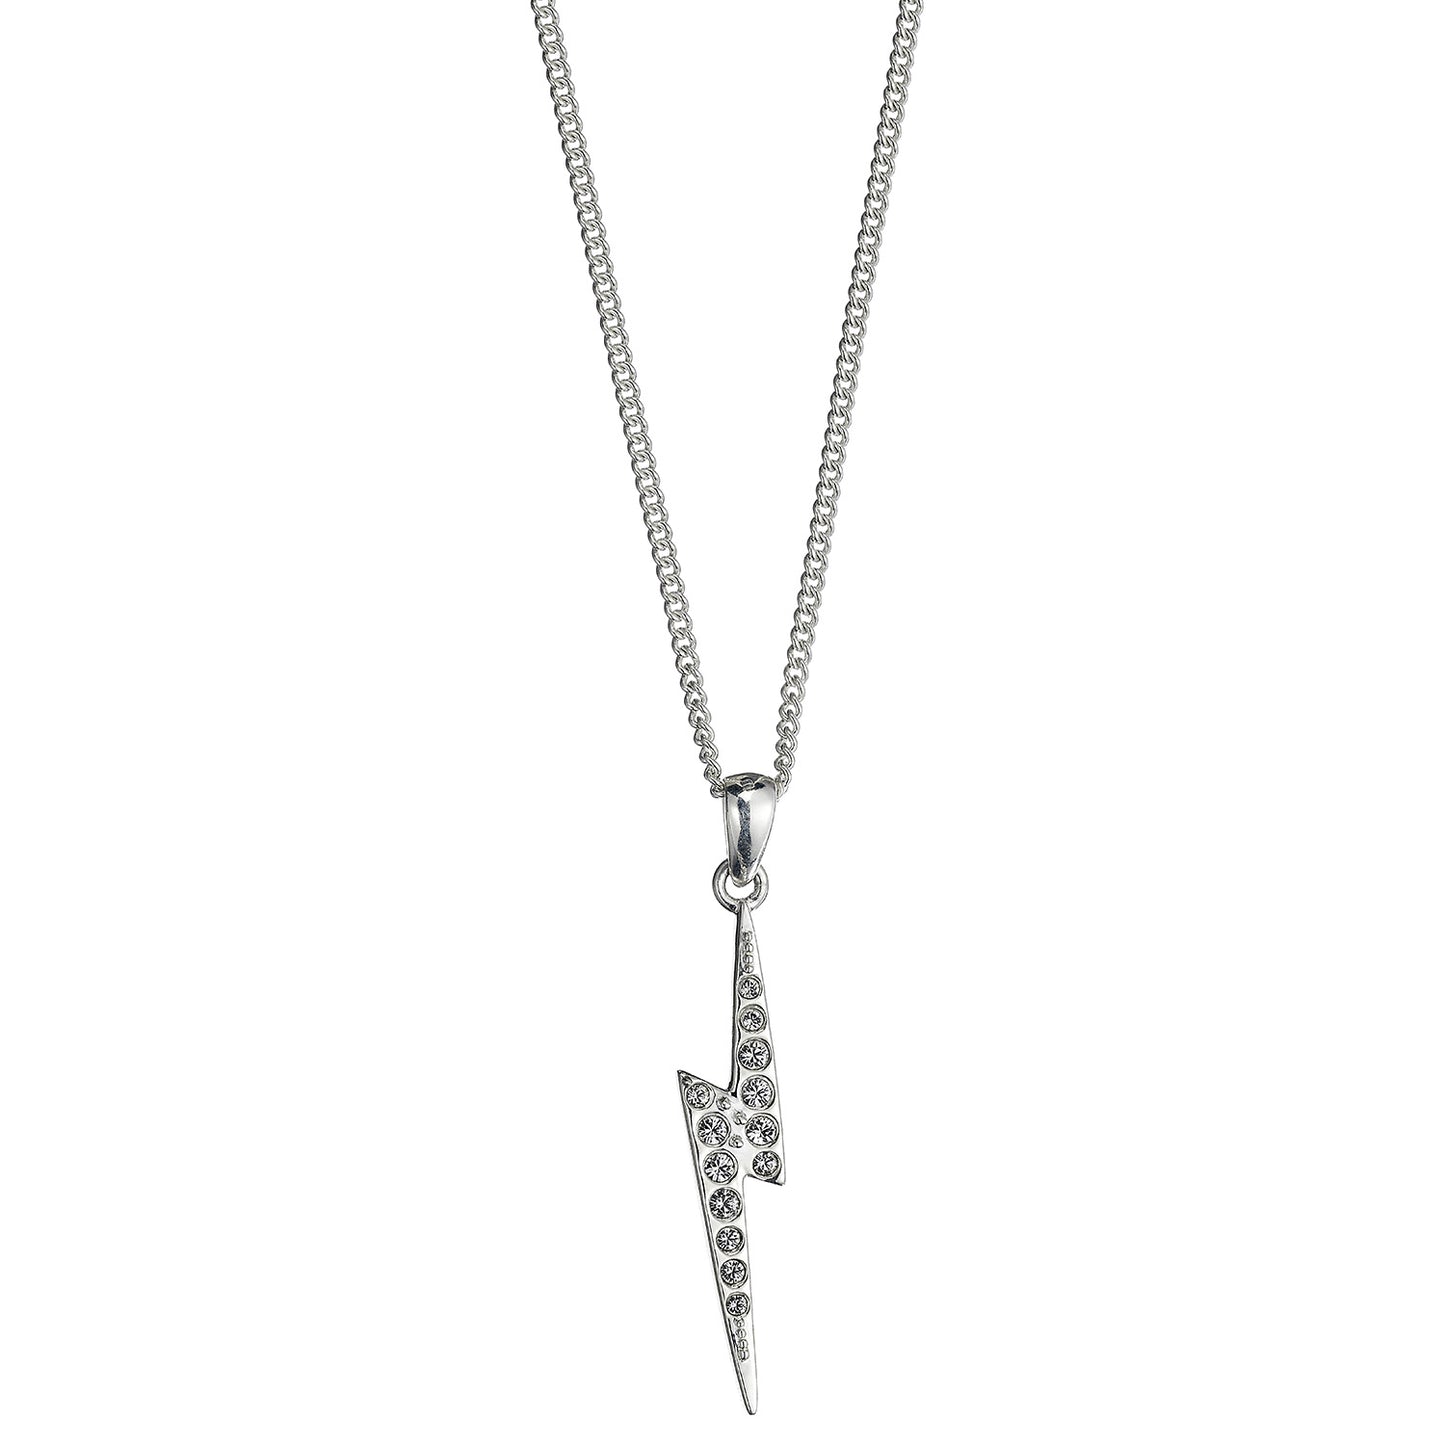 Harry Potter Lightning Bolt Scar Necklace Embellished with Crystals - Sterling Silver